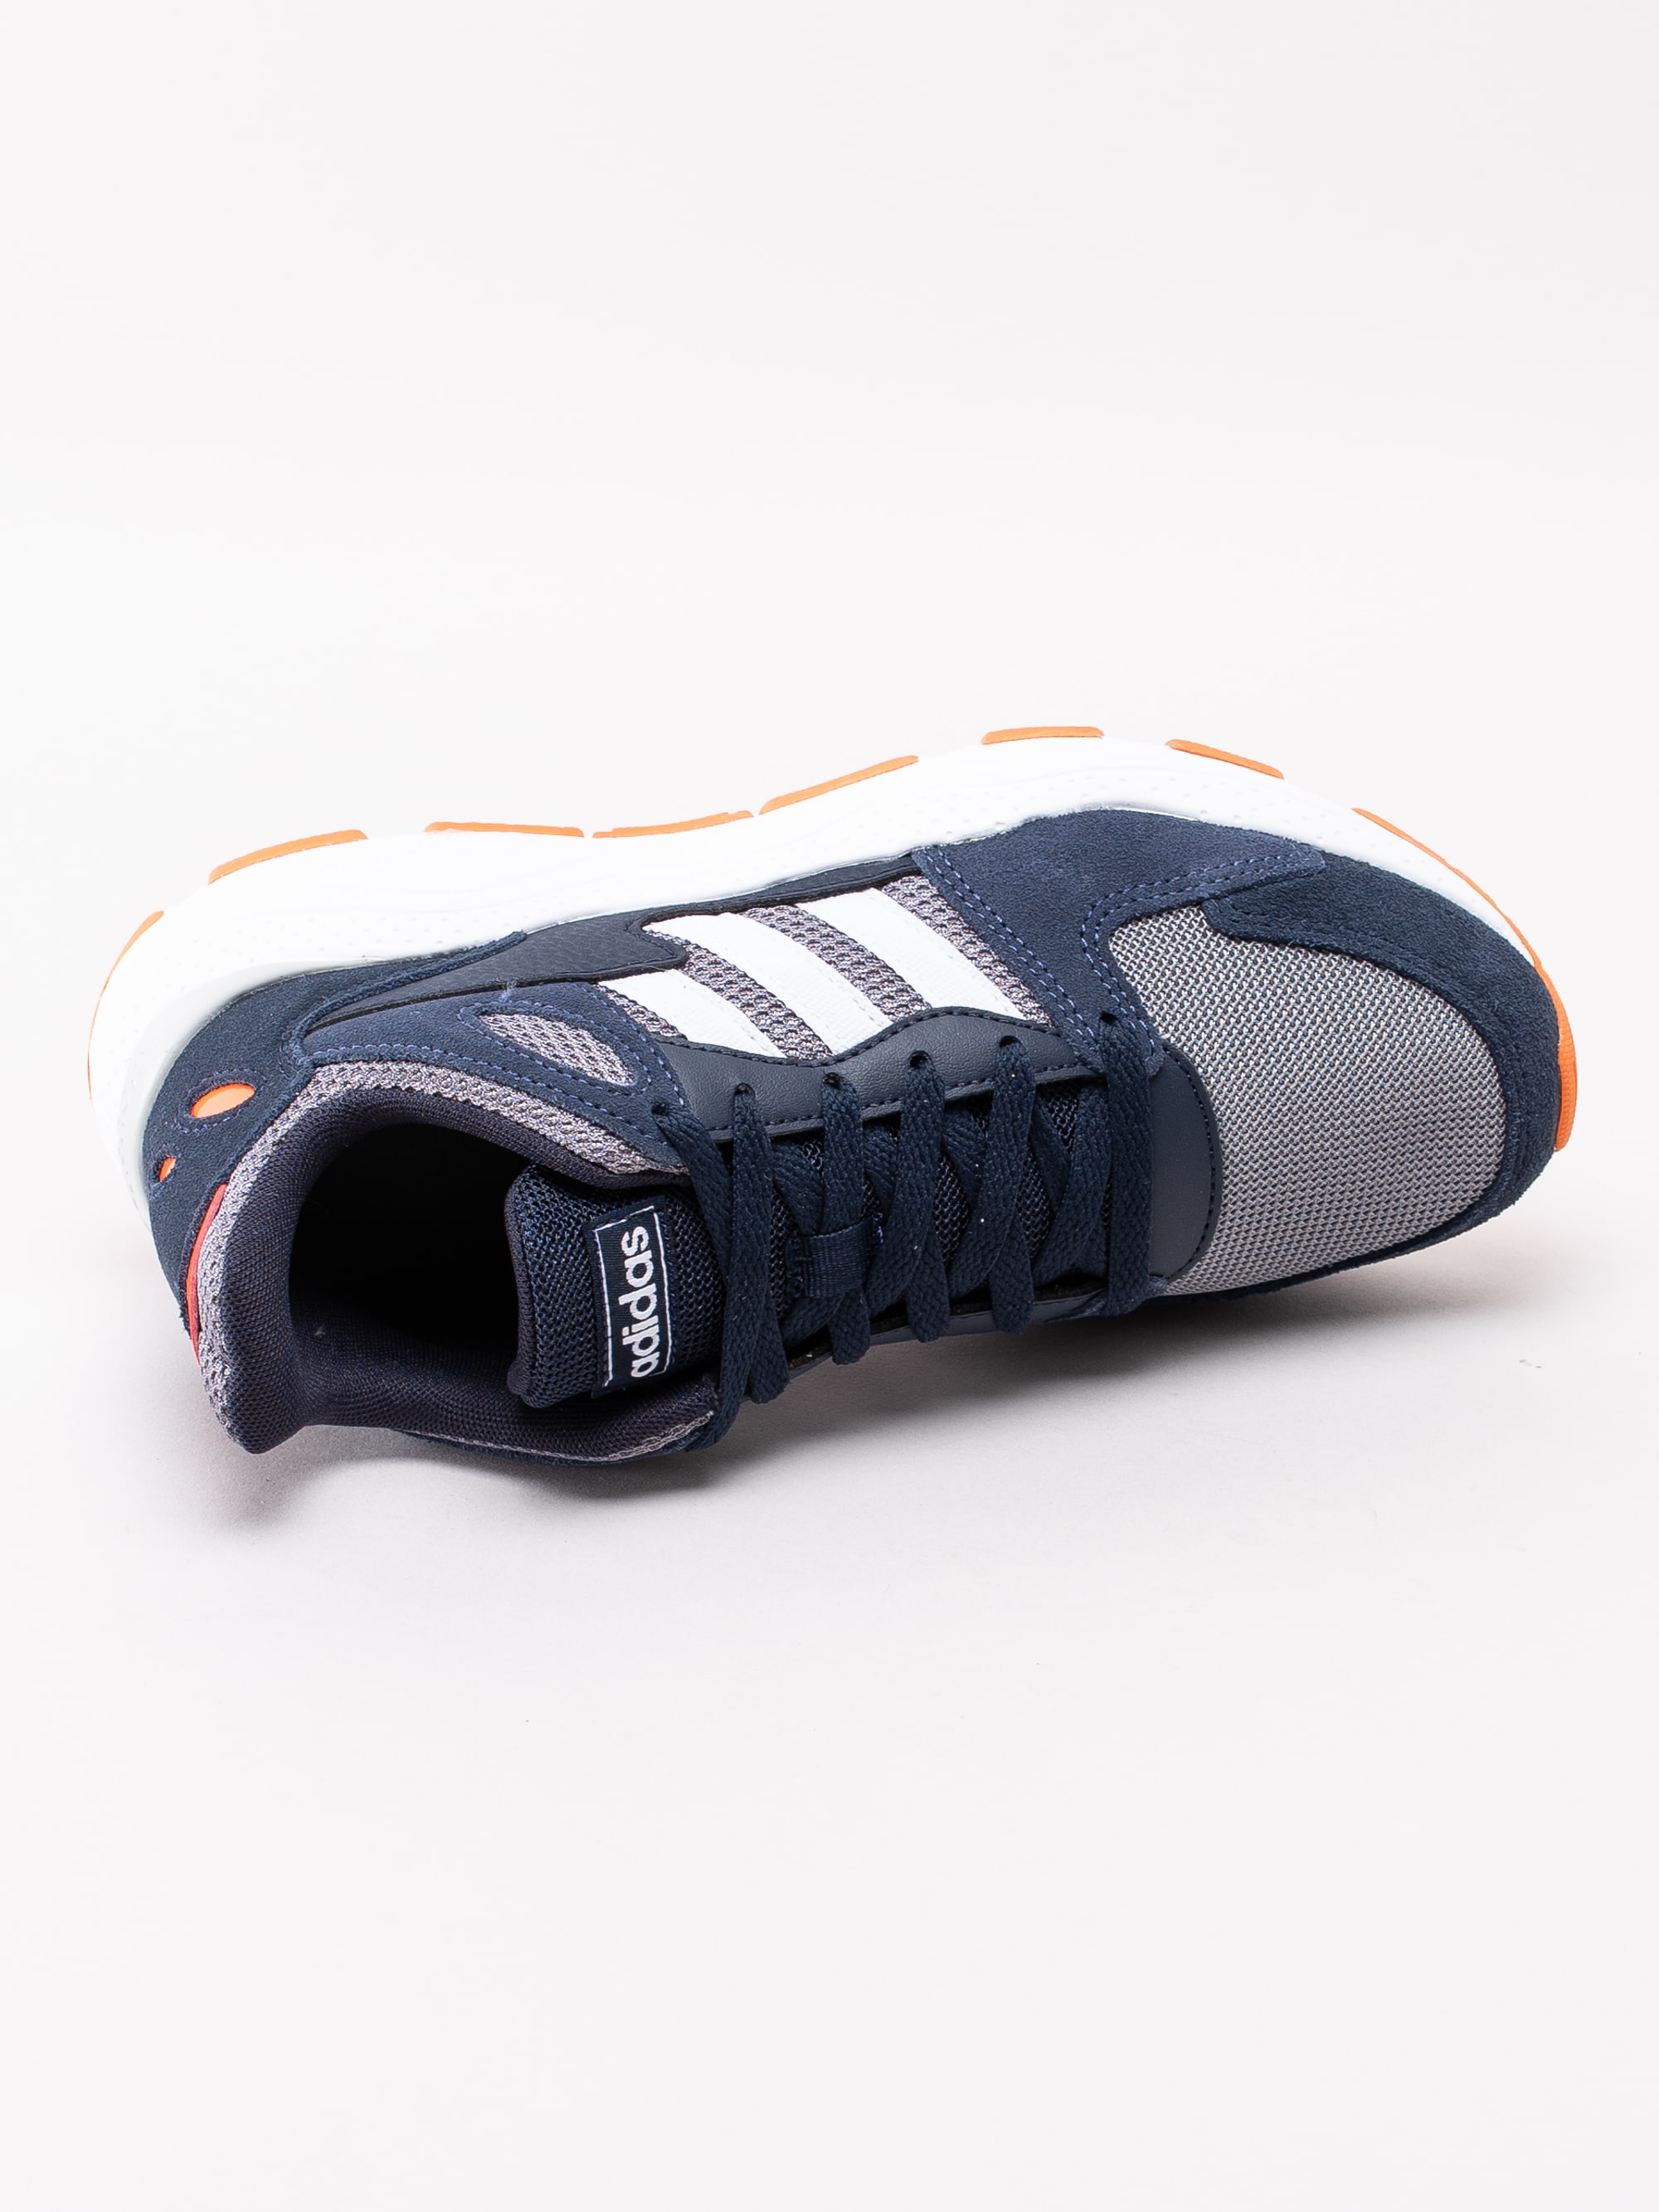 56193002 Adidas Chaos J EF5308 mörkblå sneakers i junior storlekar-4